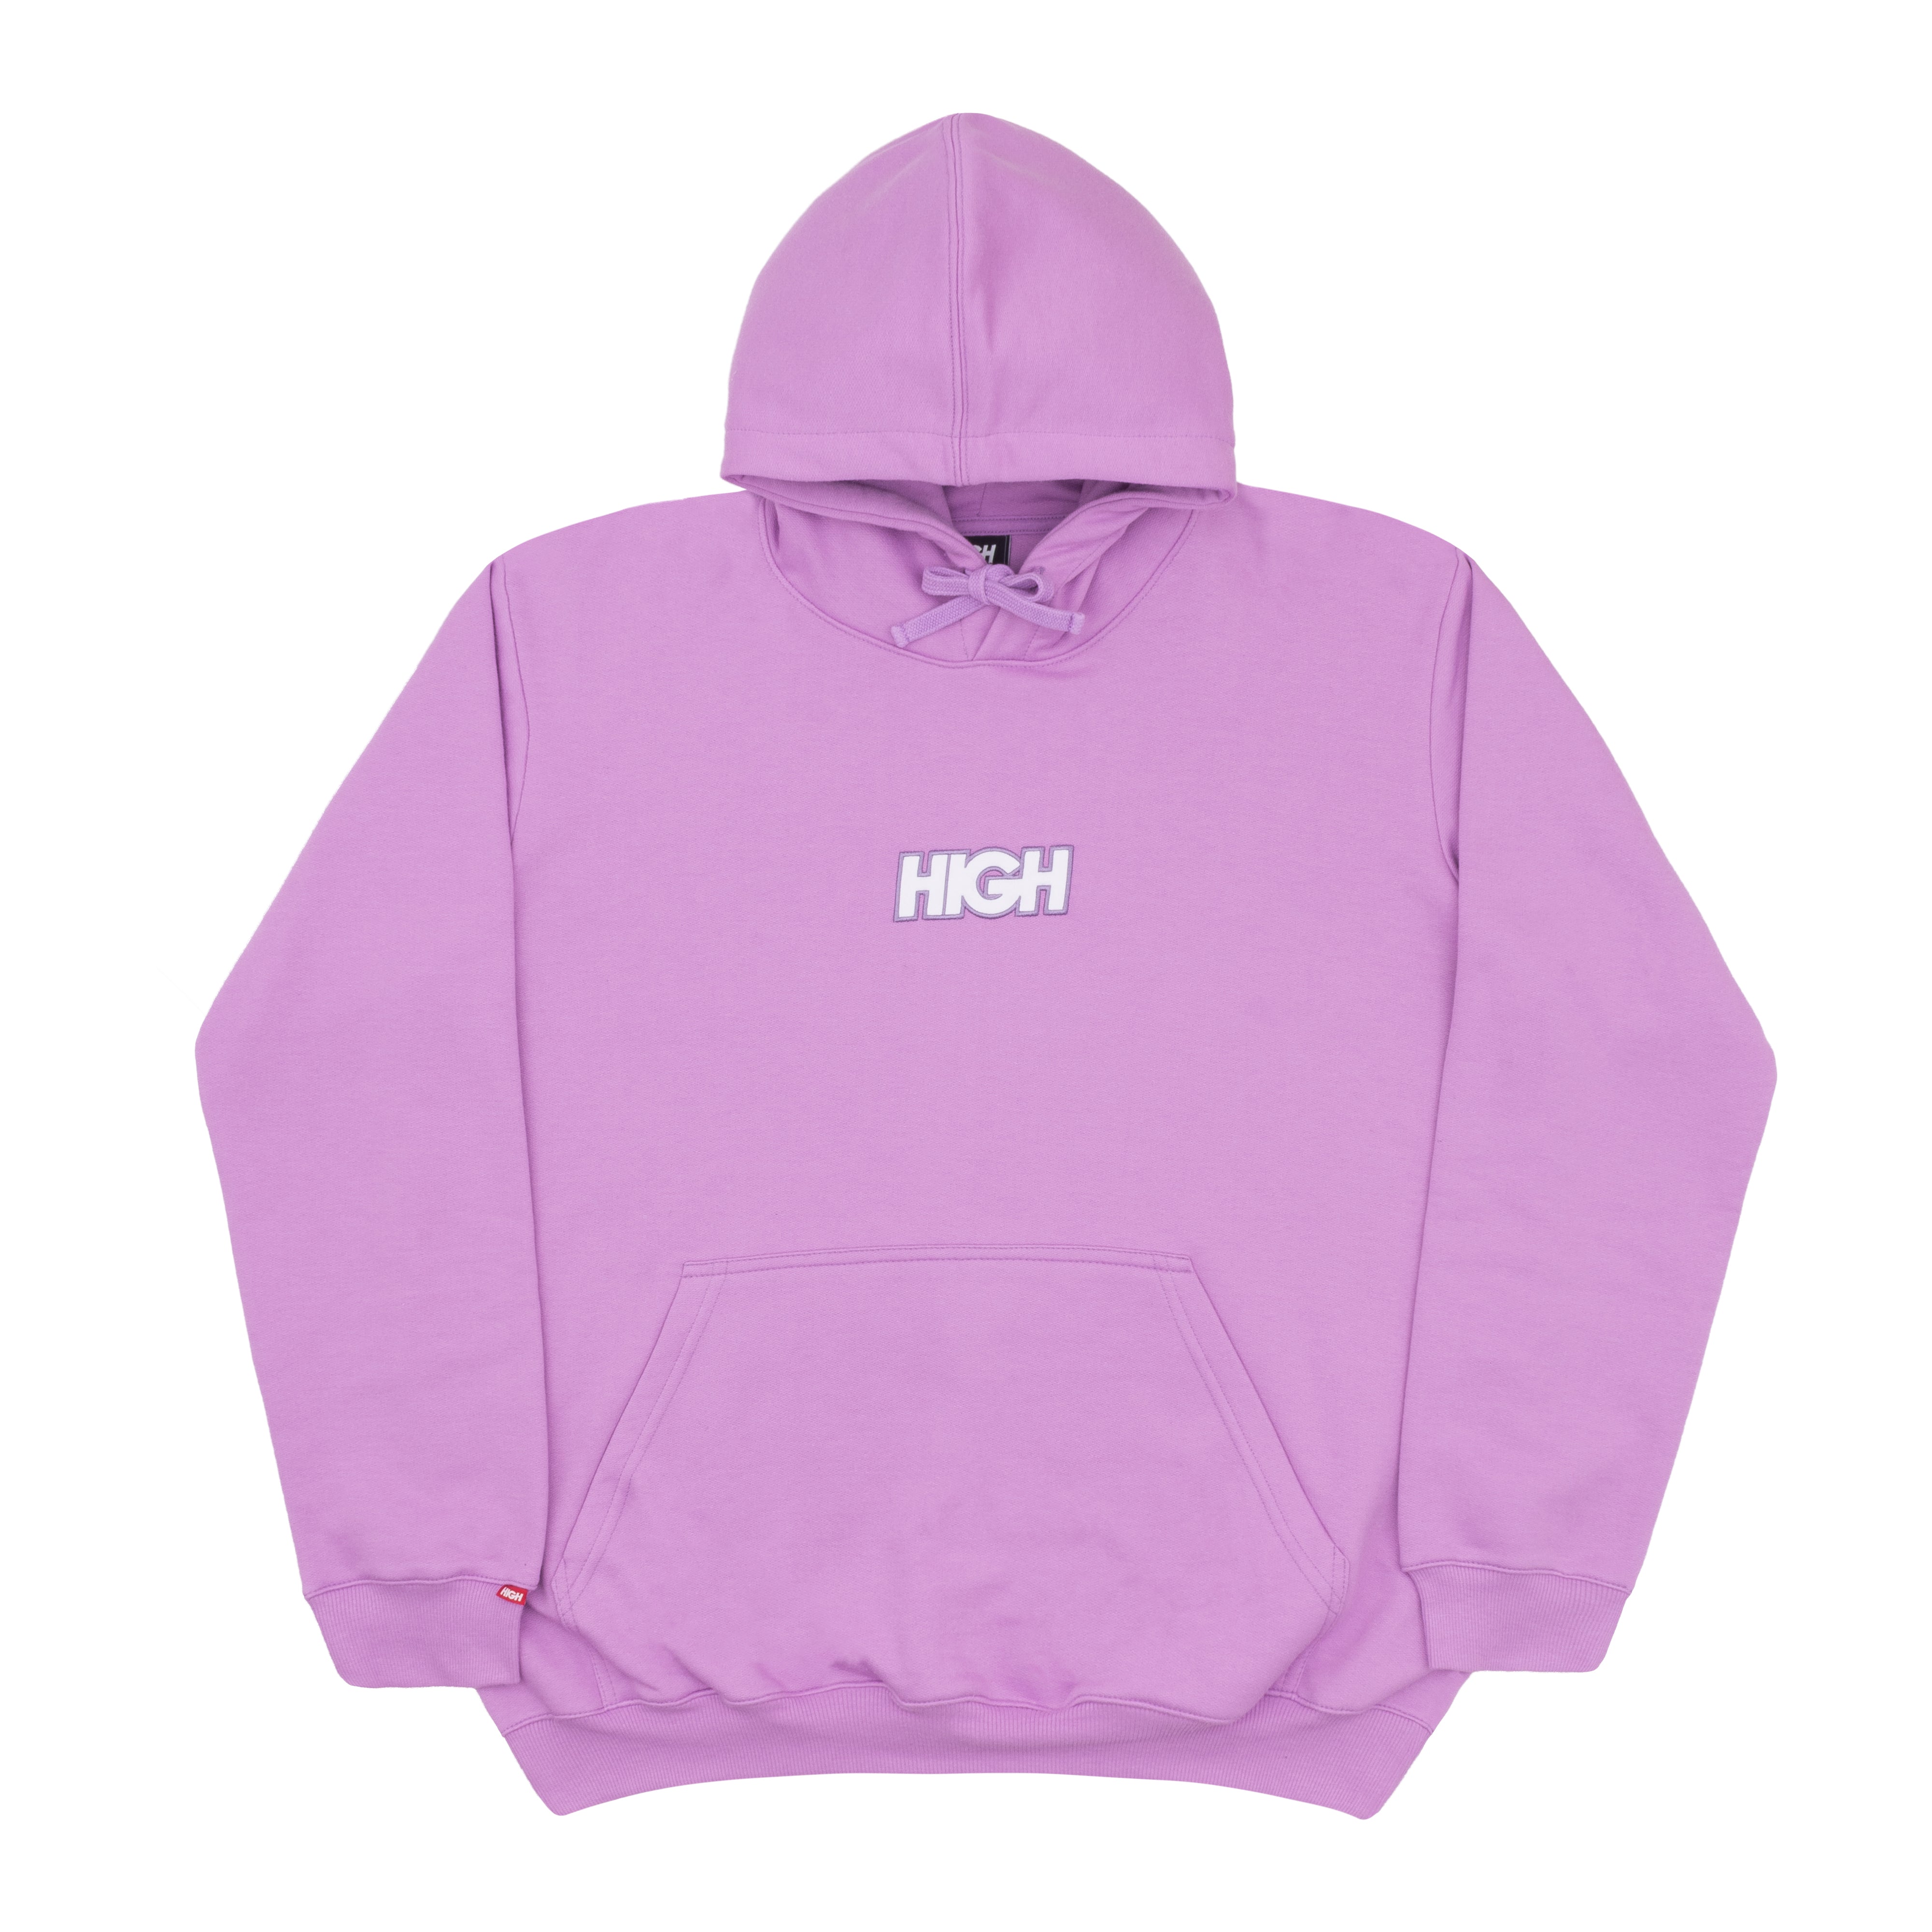 HIGH - Moletom Logo "Light Lilac" - THE GAME